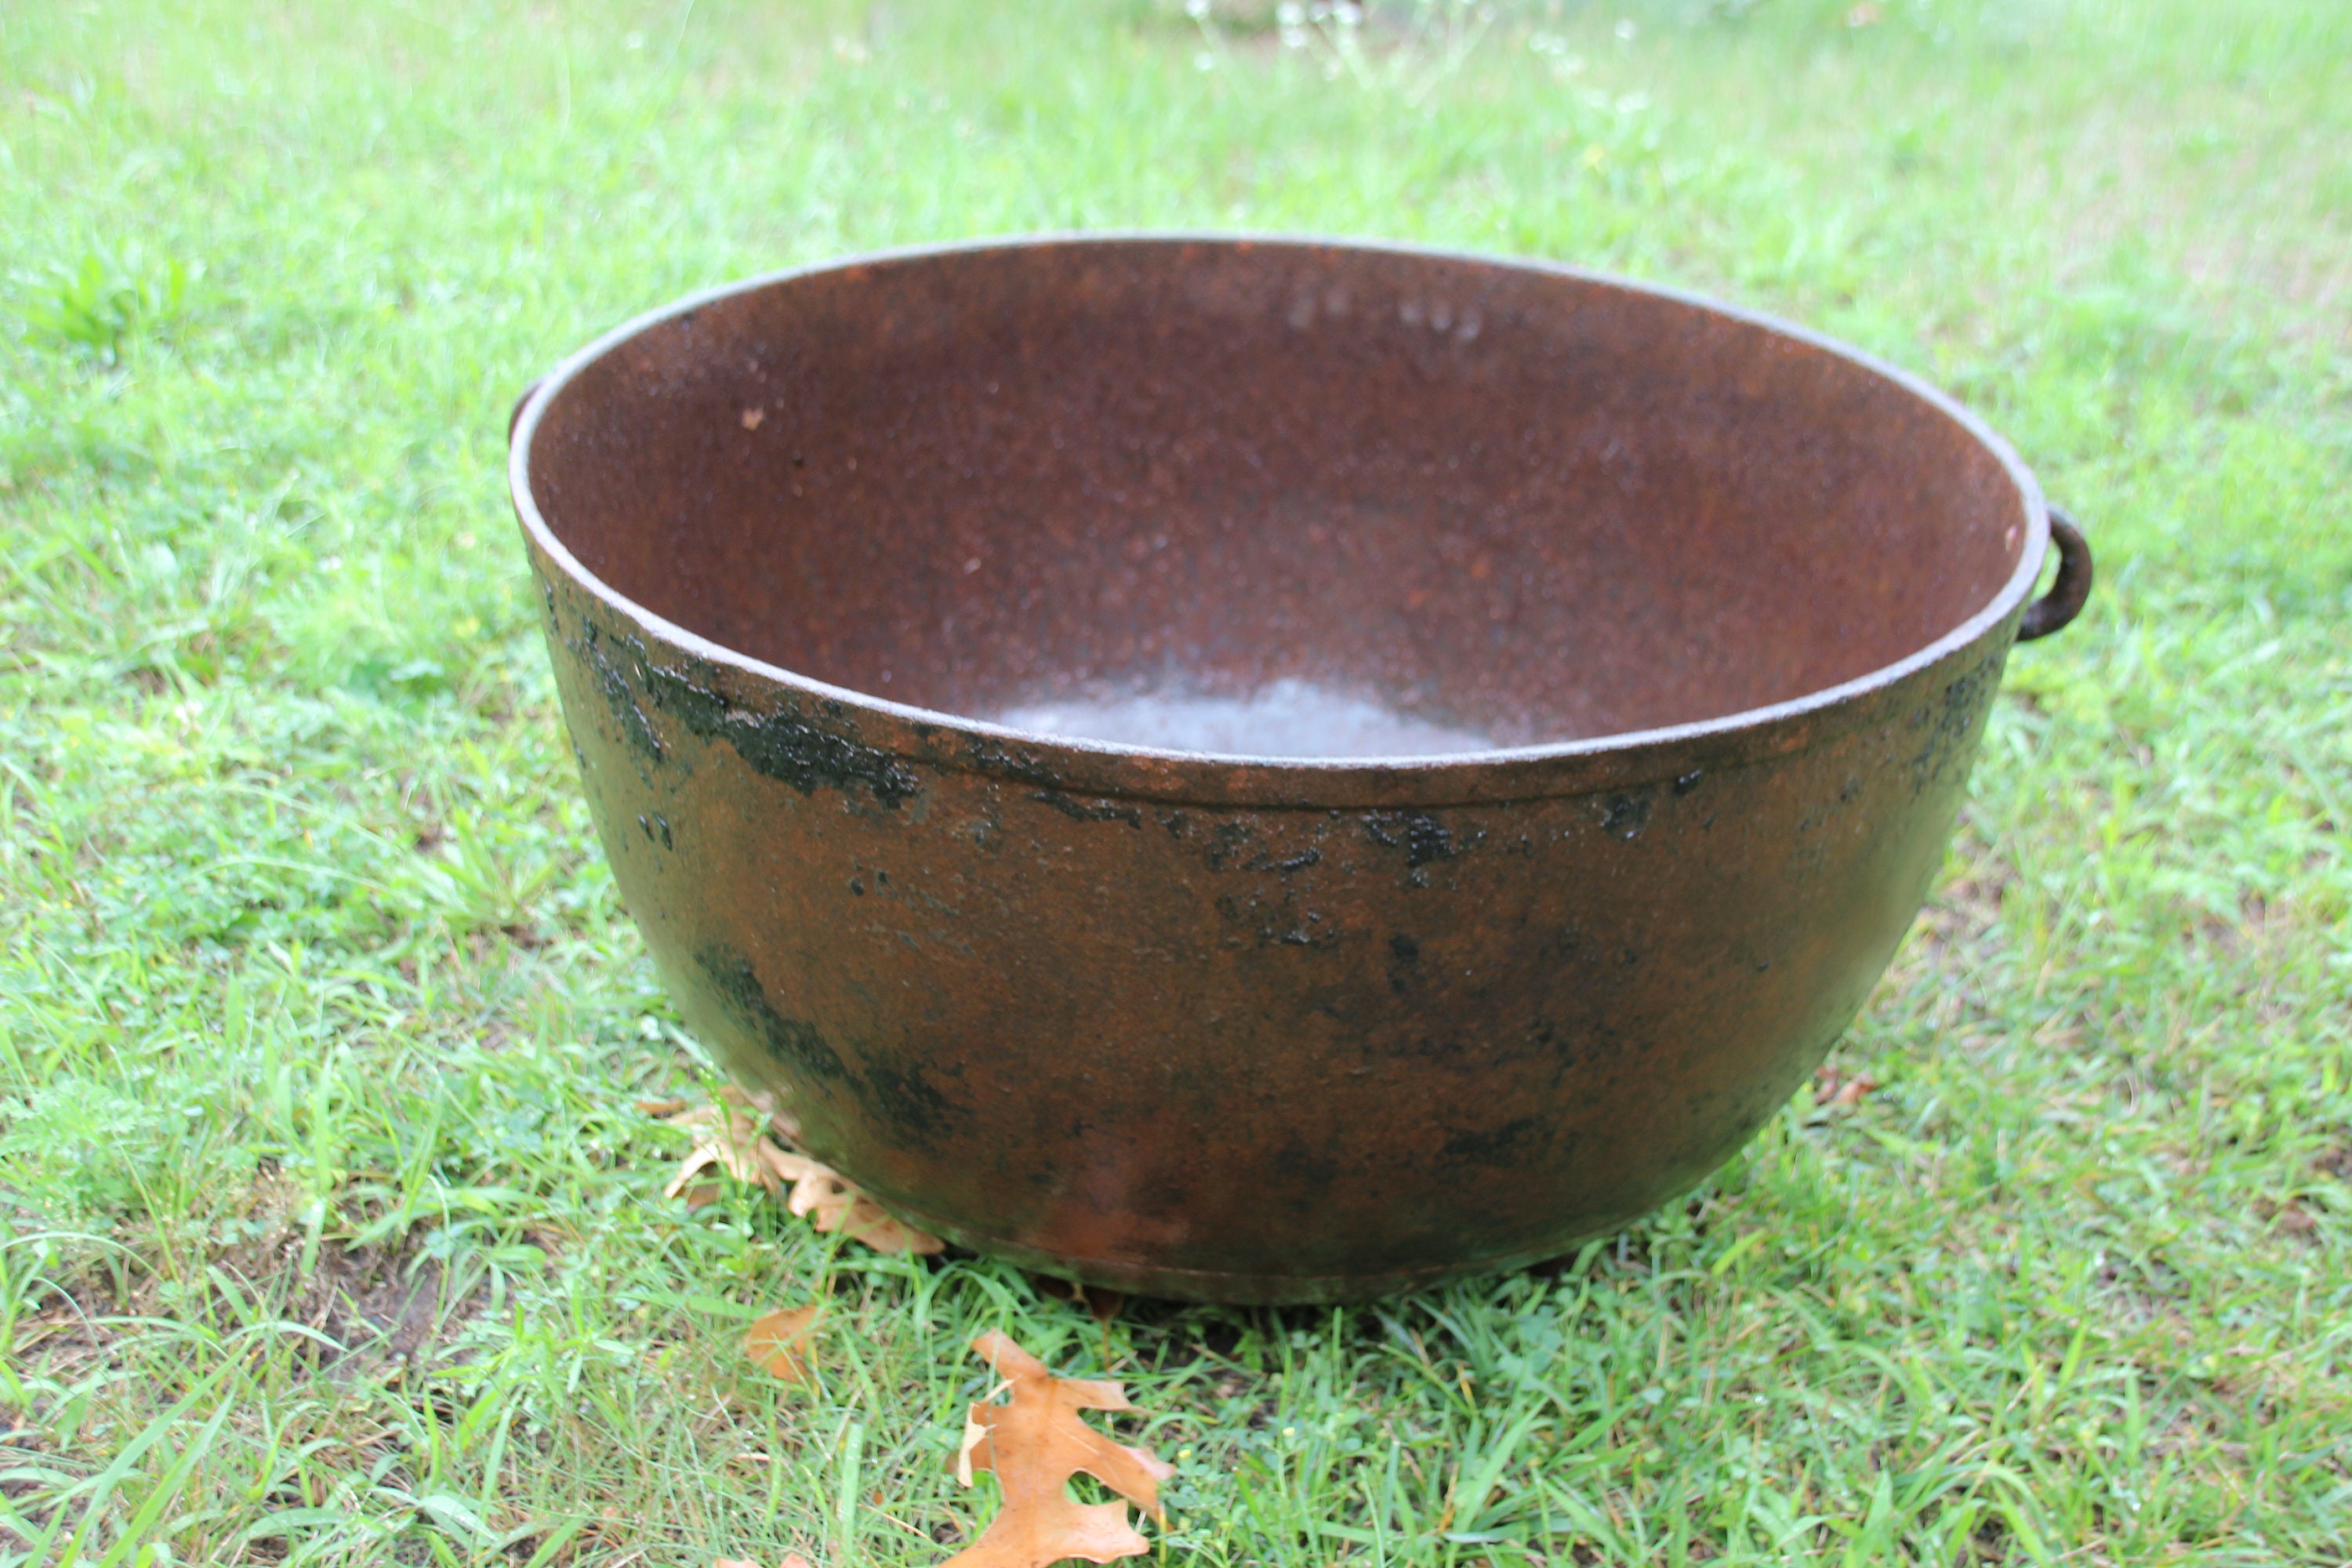 Vintage Small Cast Iron 3 Leg Kettle, Bean Pot, Gypsy Pot, Cauldron